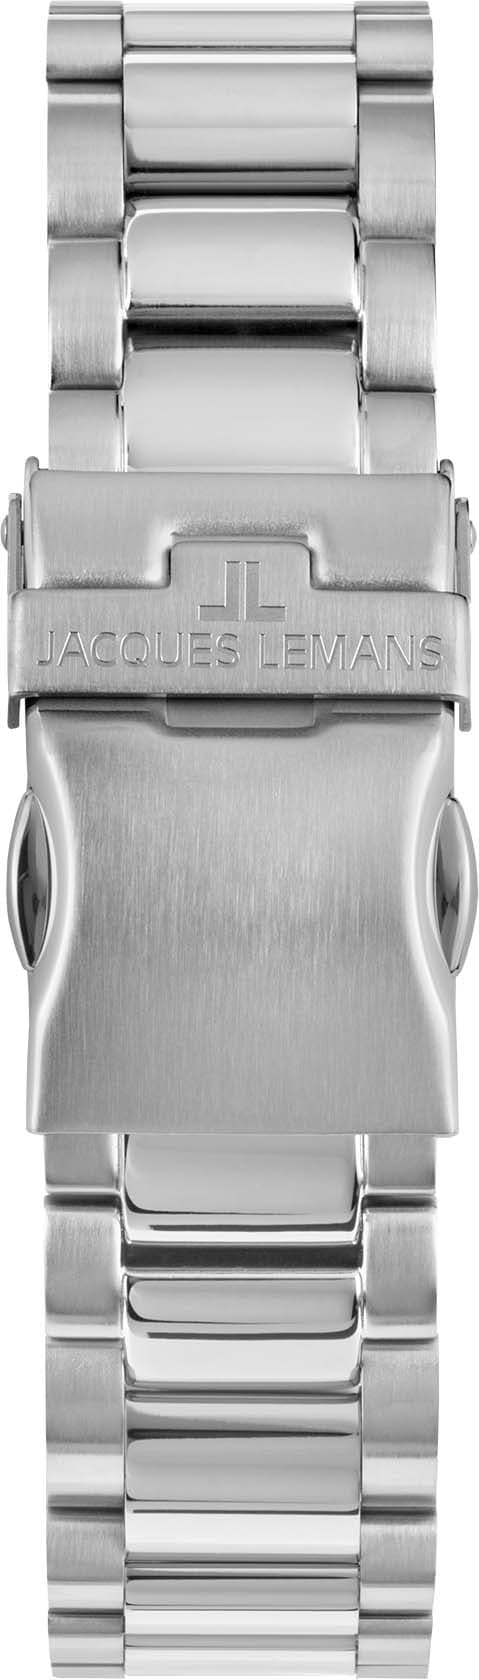 Jacques Lemans Chronograph »Liverpool, 1-2140F« online kaufen | BAUR